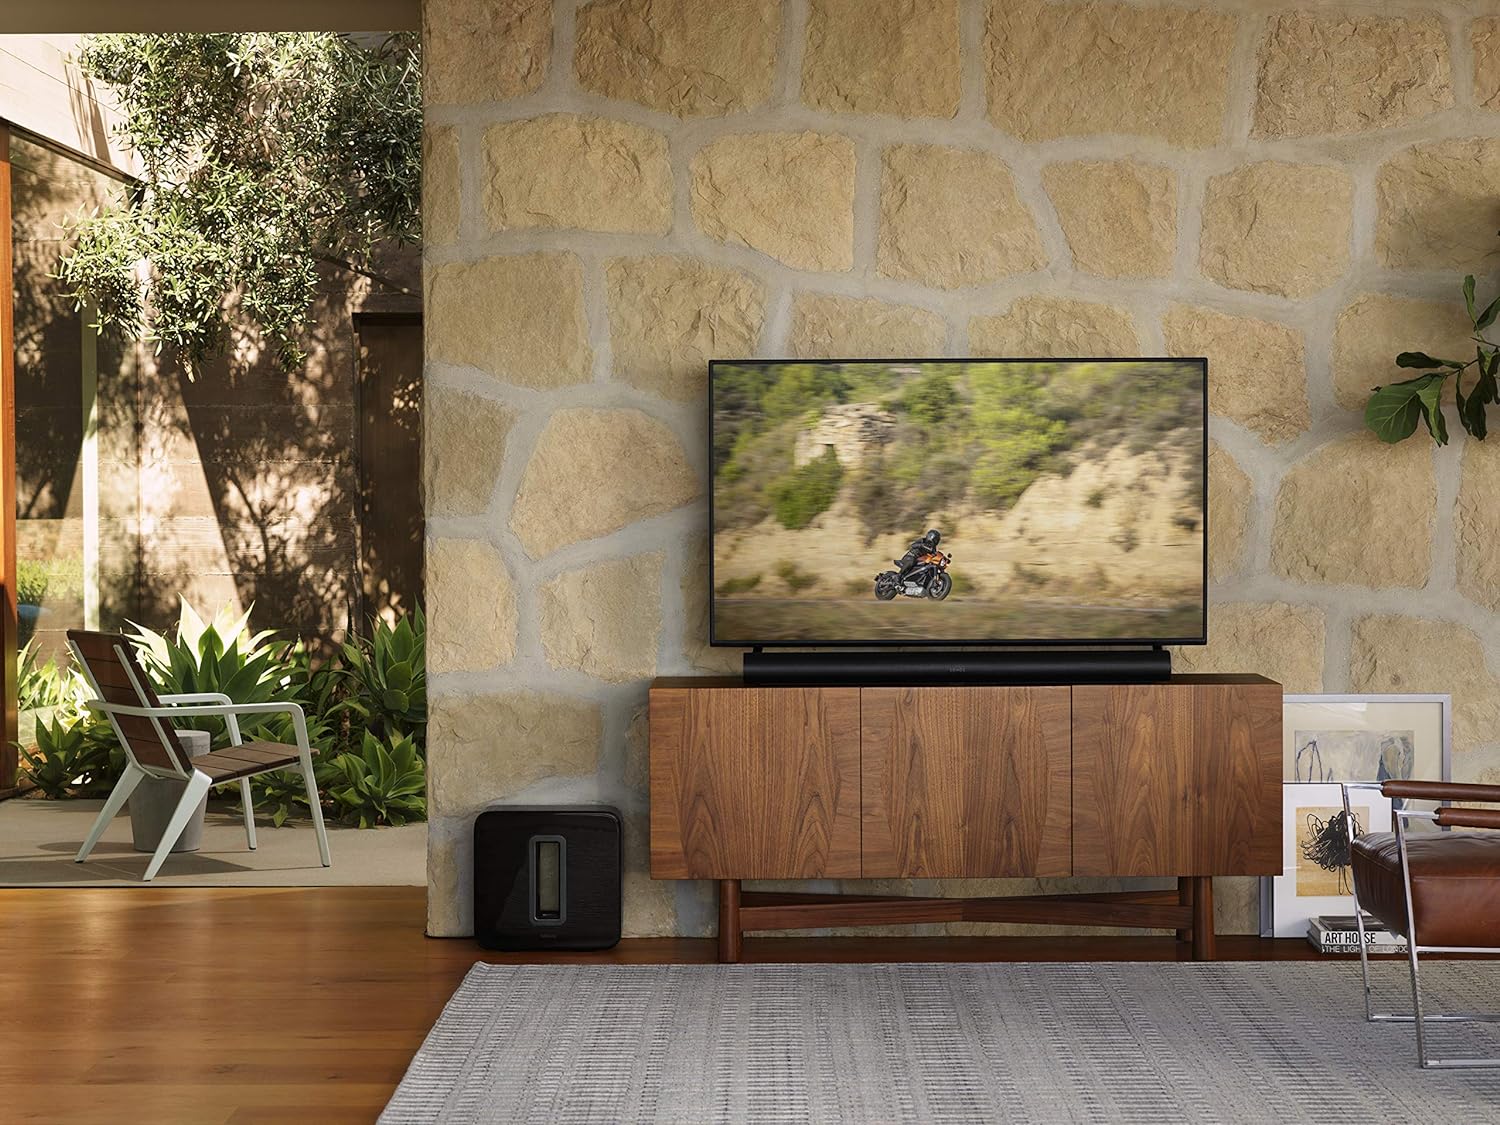 Sonos ARC Barra de Sonido inalámbrica e Inteligente Premium para TV, Videojuegos y música con tecnología Dolby Atmos (Color Negro) + Sub Subwoofer